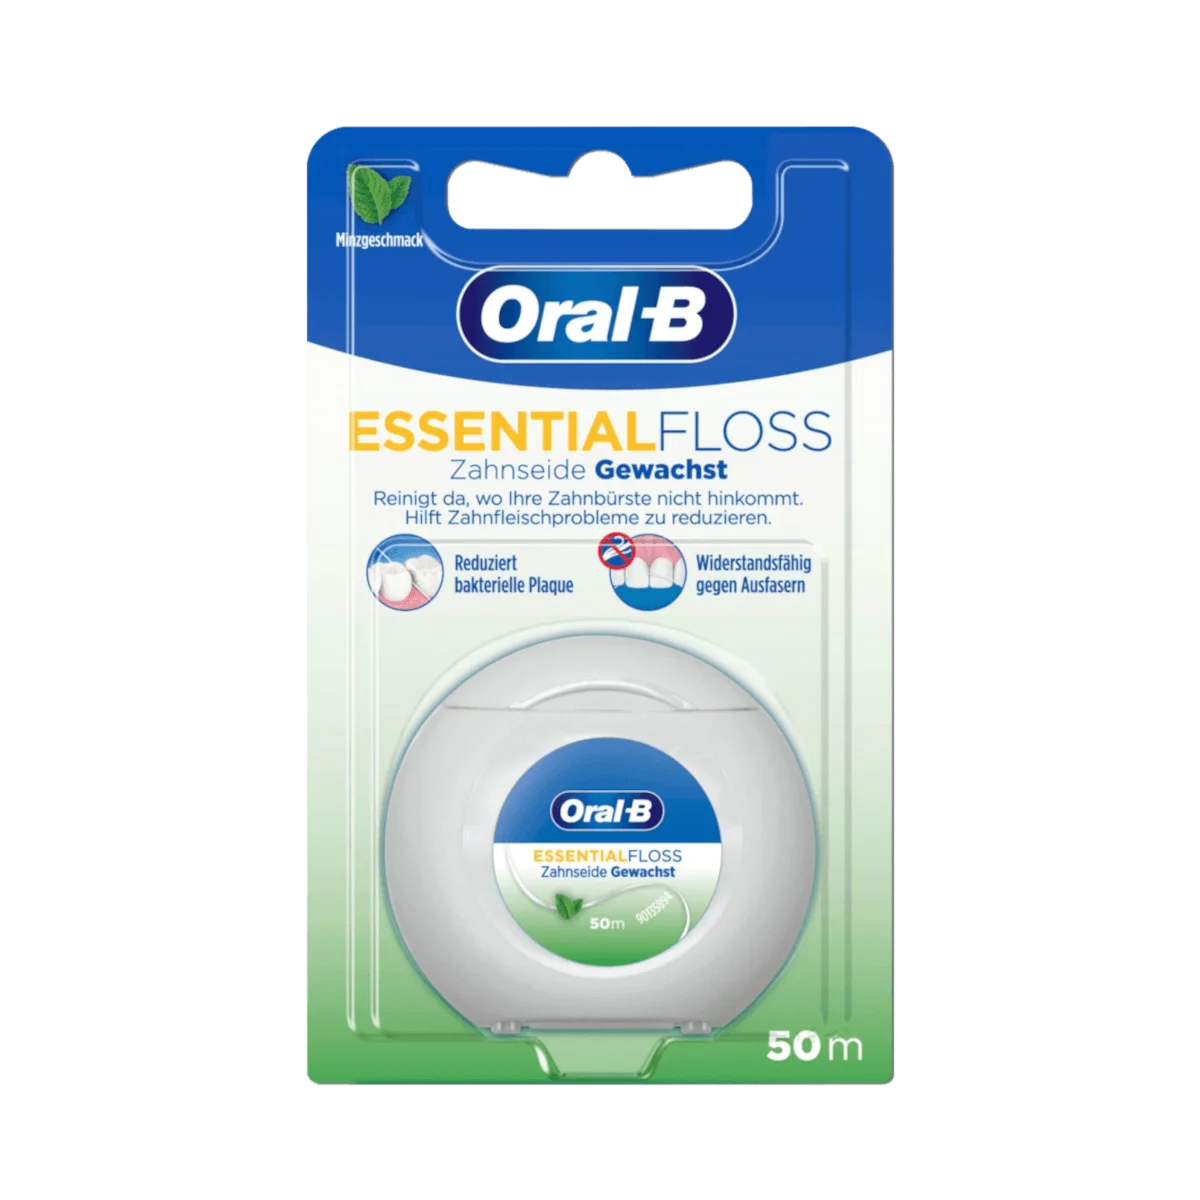 Oral-B Zahnseide EssentialFloss Minzgeschmack gewachst, 50 ml